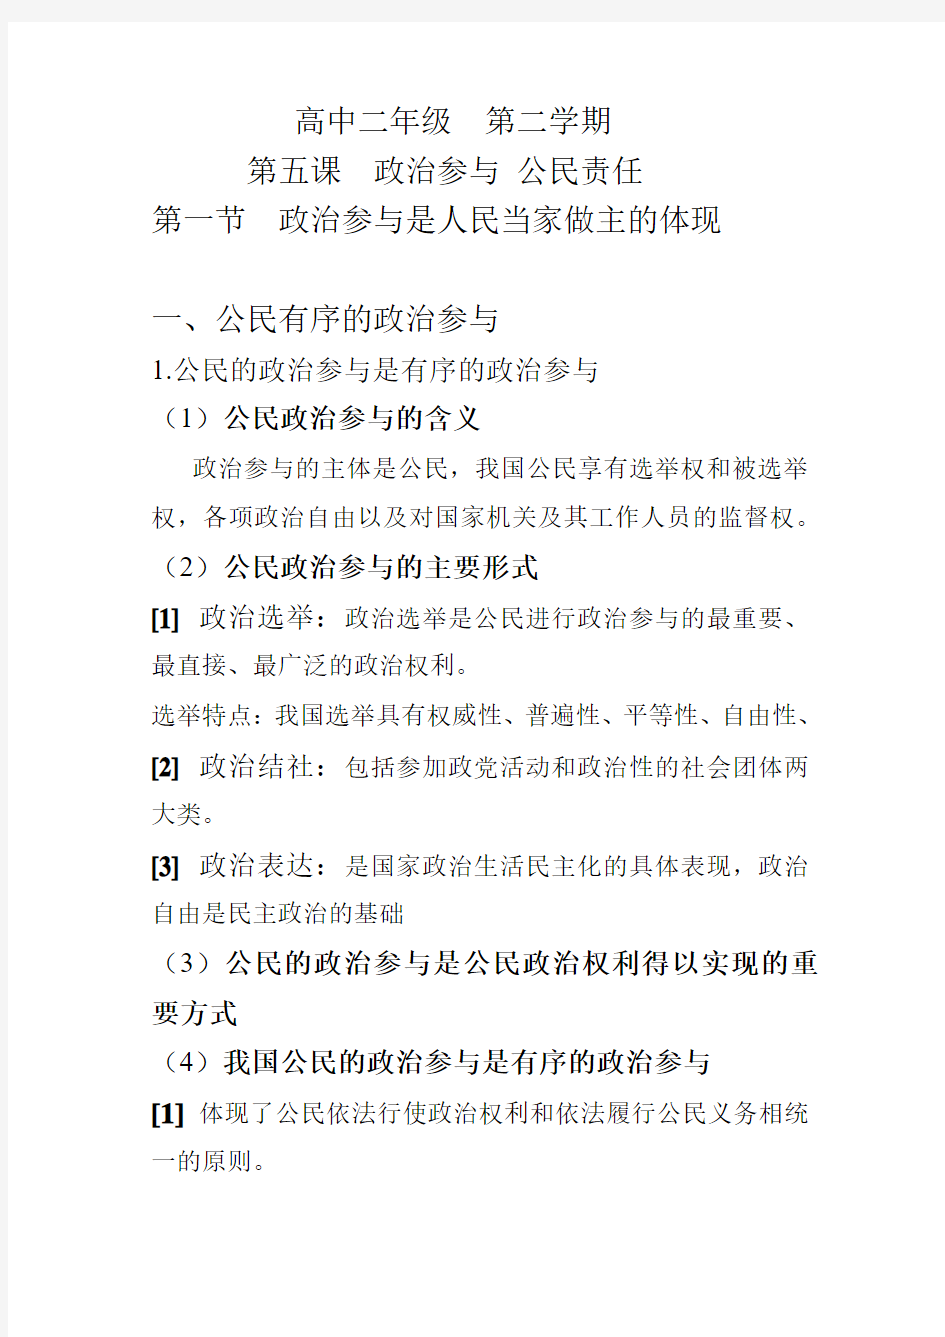 上海教育出版社  思想政治高中二年级  第二学期   第五课  第一节